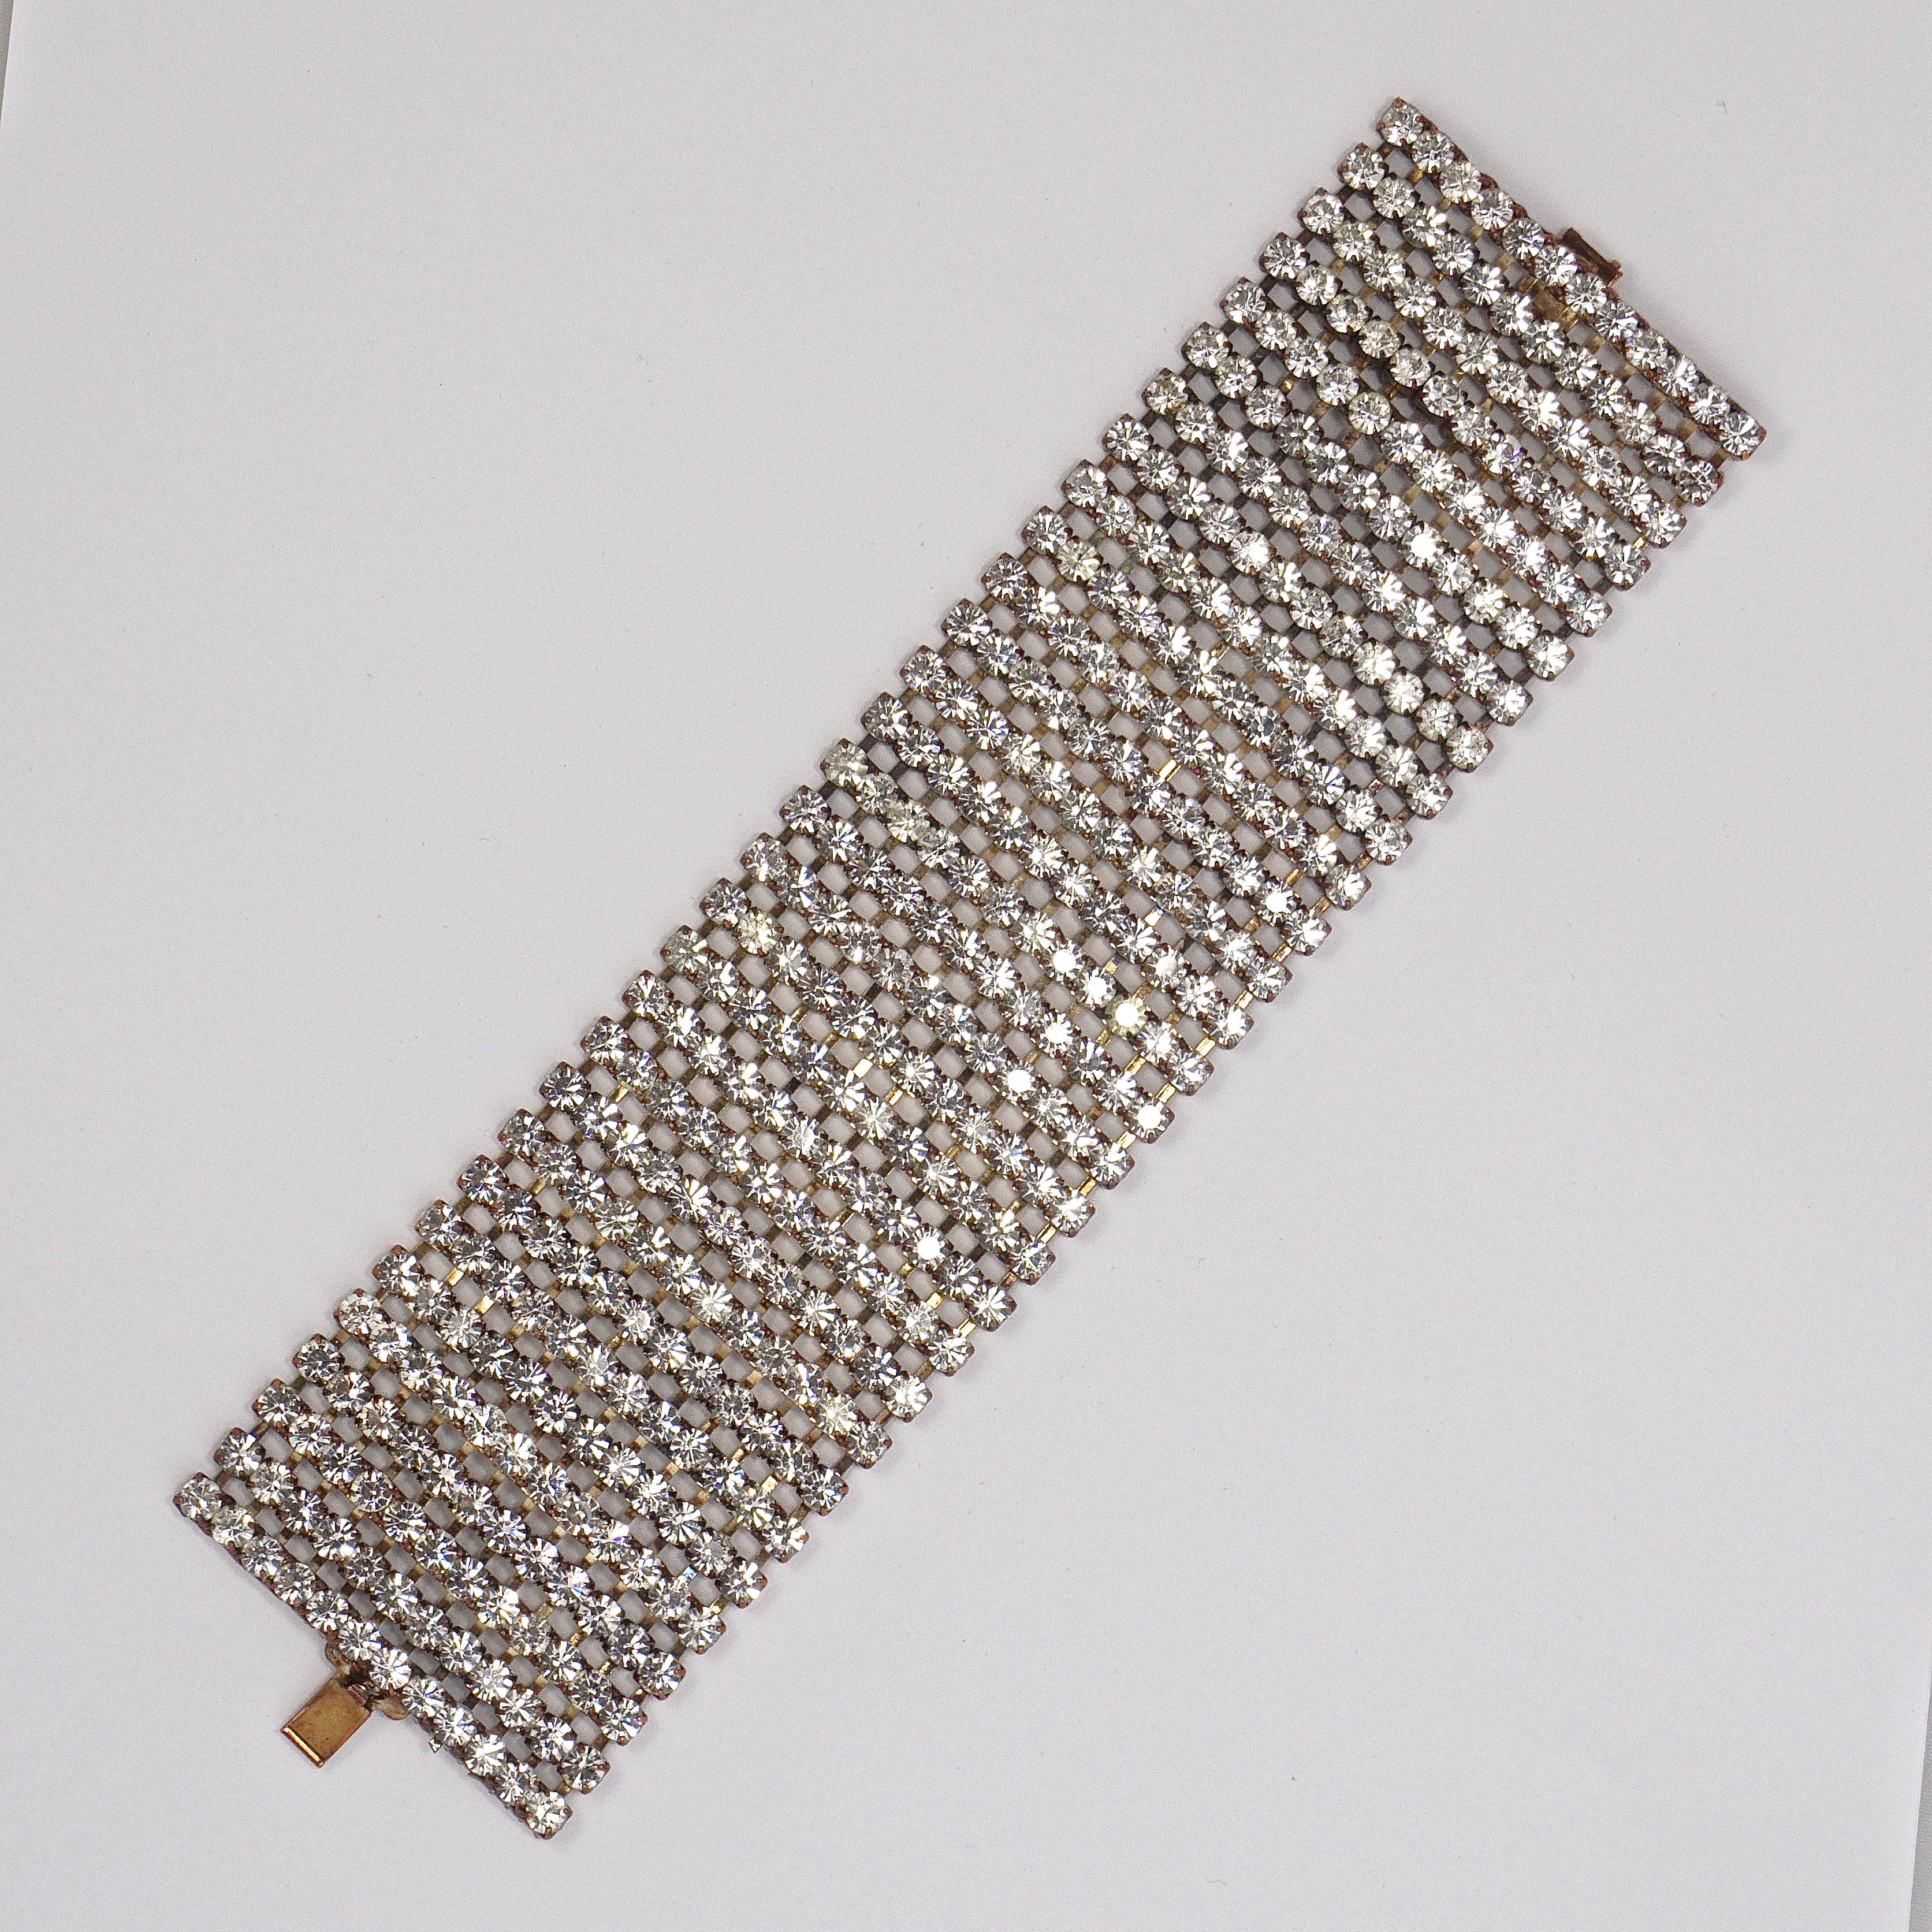 Breites, kupferfarbenes Armband mit zwölf Reihen funkelnder, klarer, facettierter Strasssteine. Messende Länge 19.3cm / 7.6 Zoll durch Breite ist 5.08cm / 2 Zoll. Um 1950er Jahre.

Dies ist eine schöne und glamouröse Vintage-Statement-Armband für